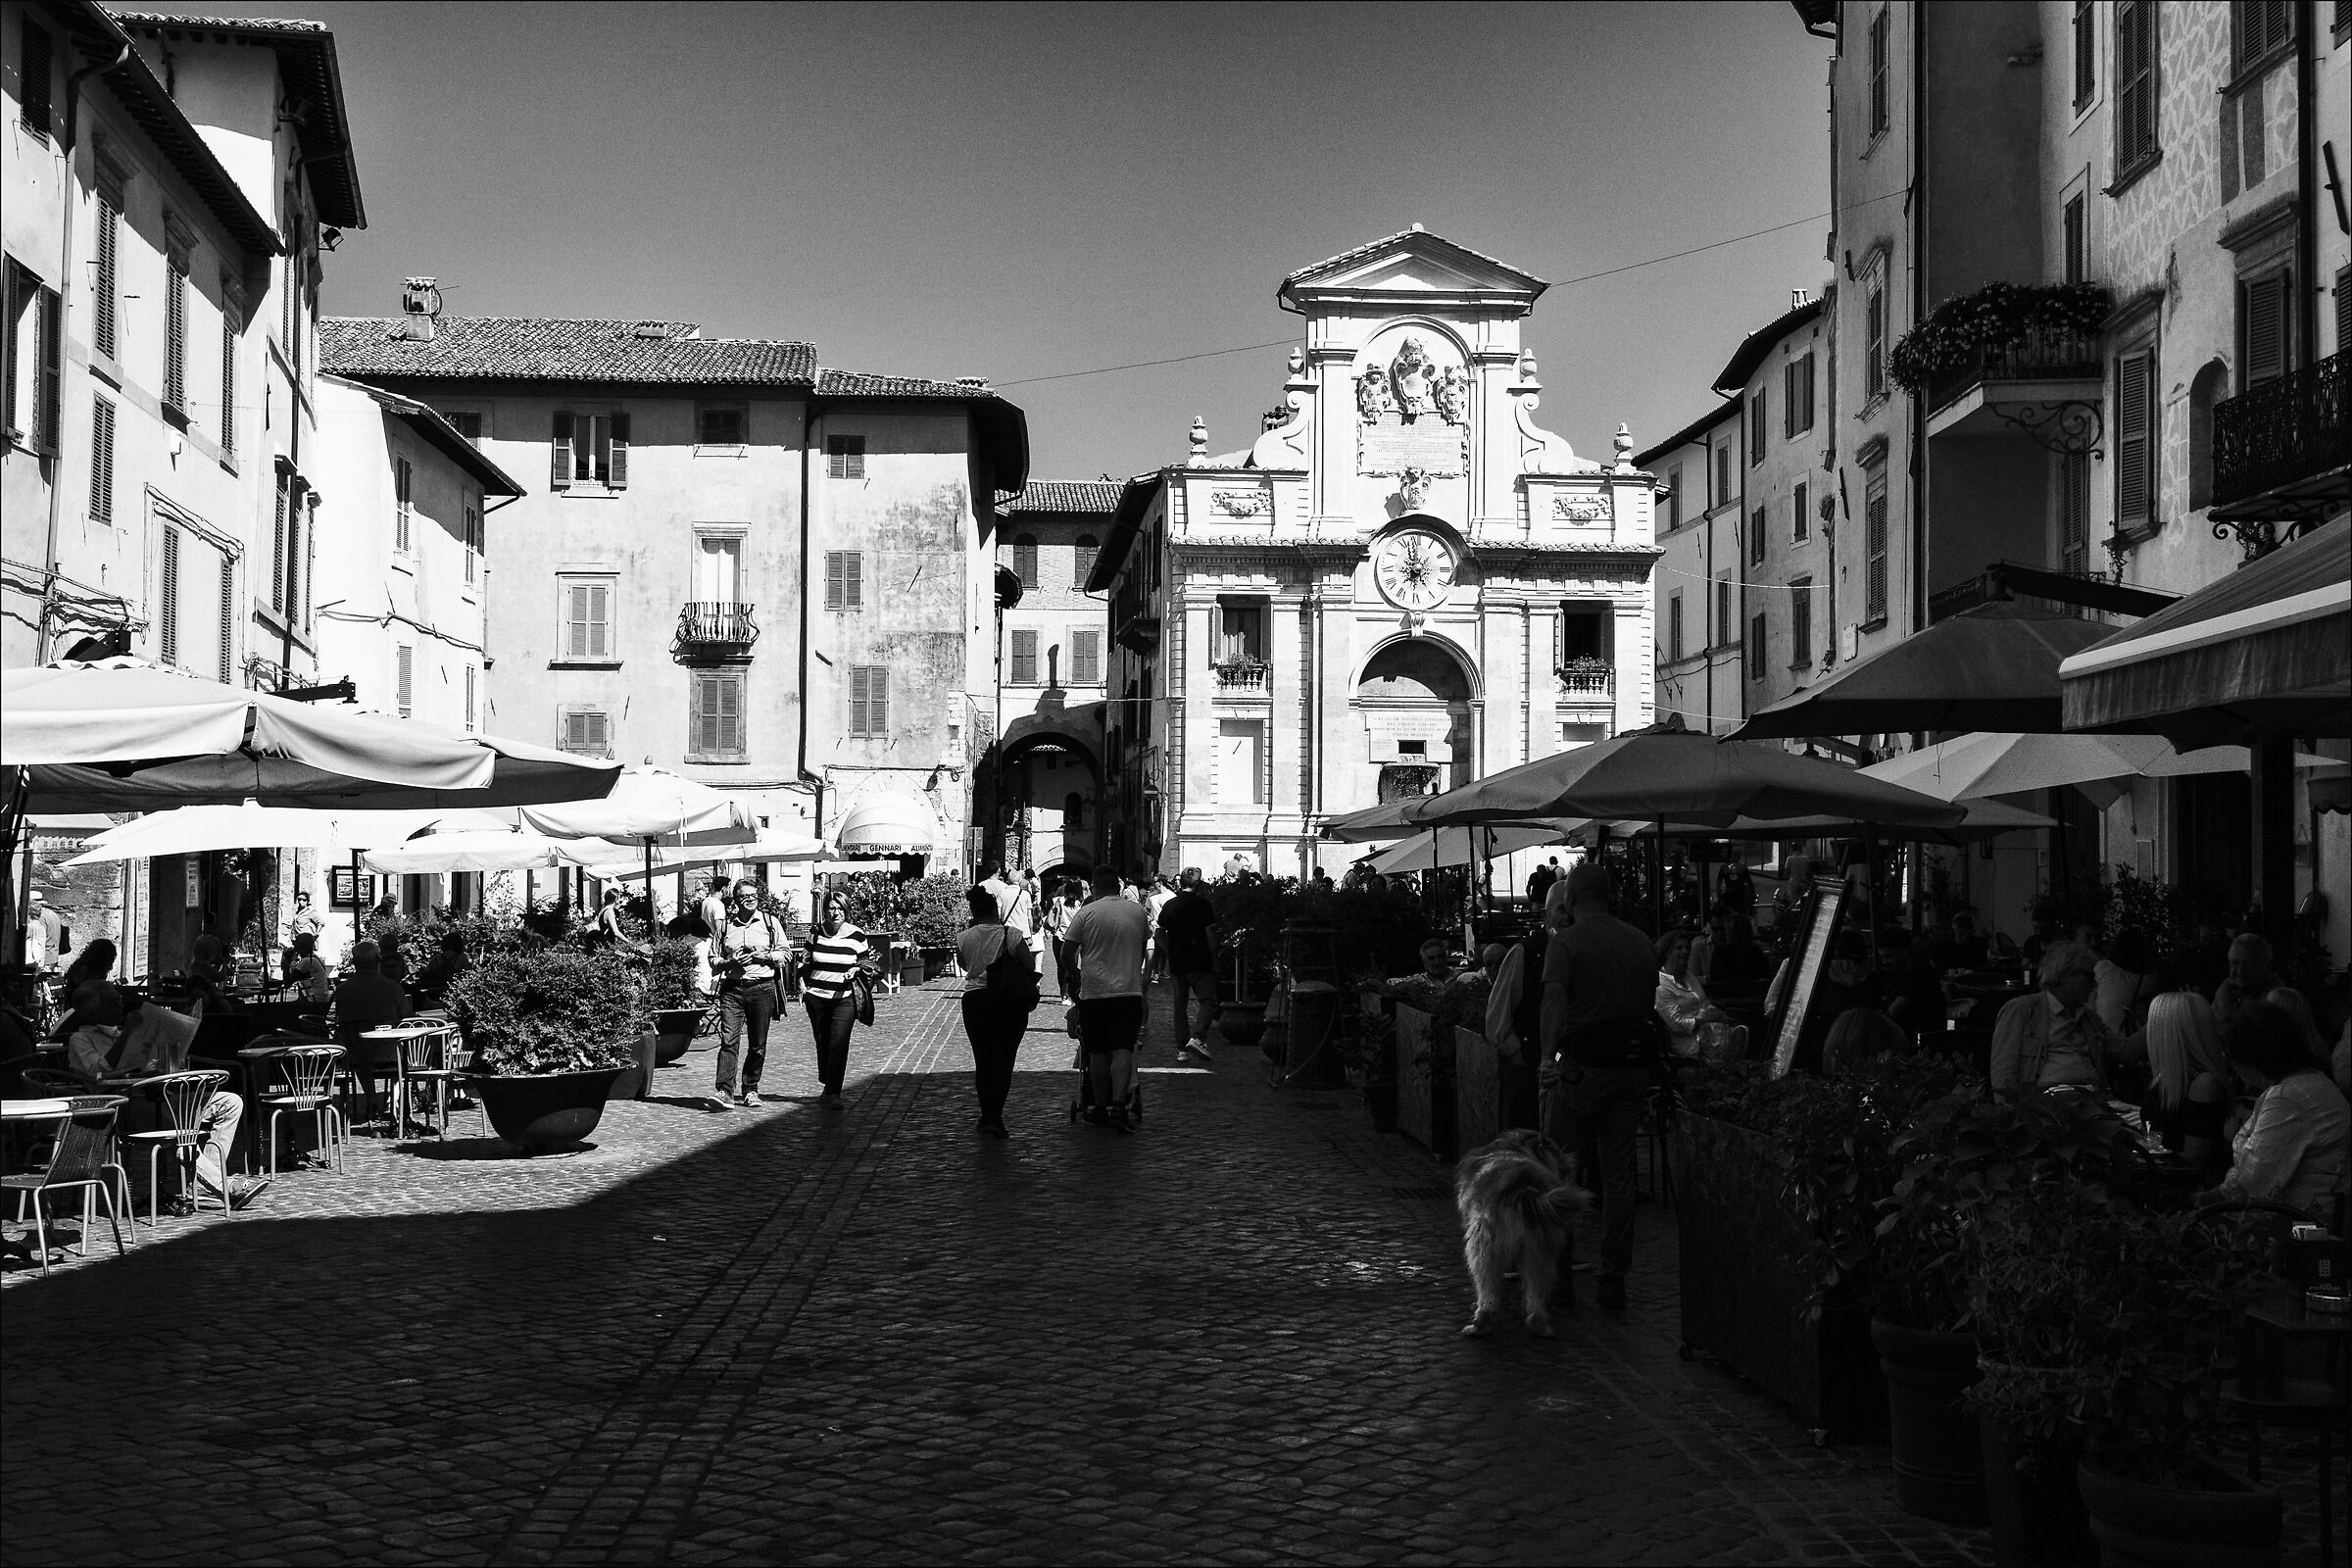 Market Square in Spoleto...